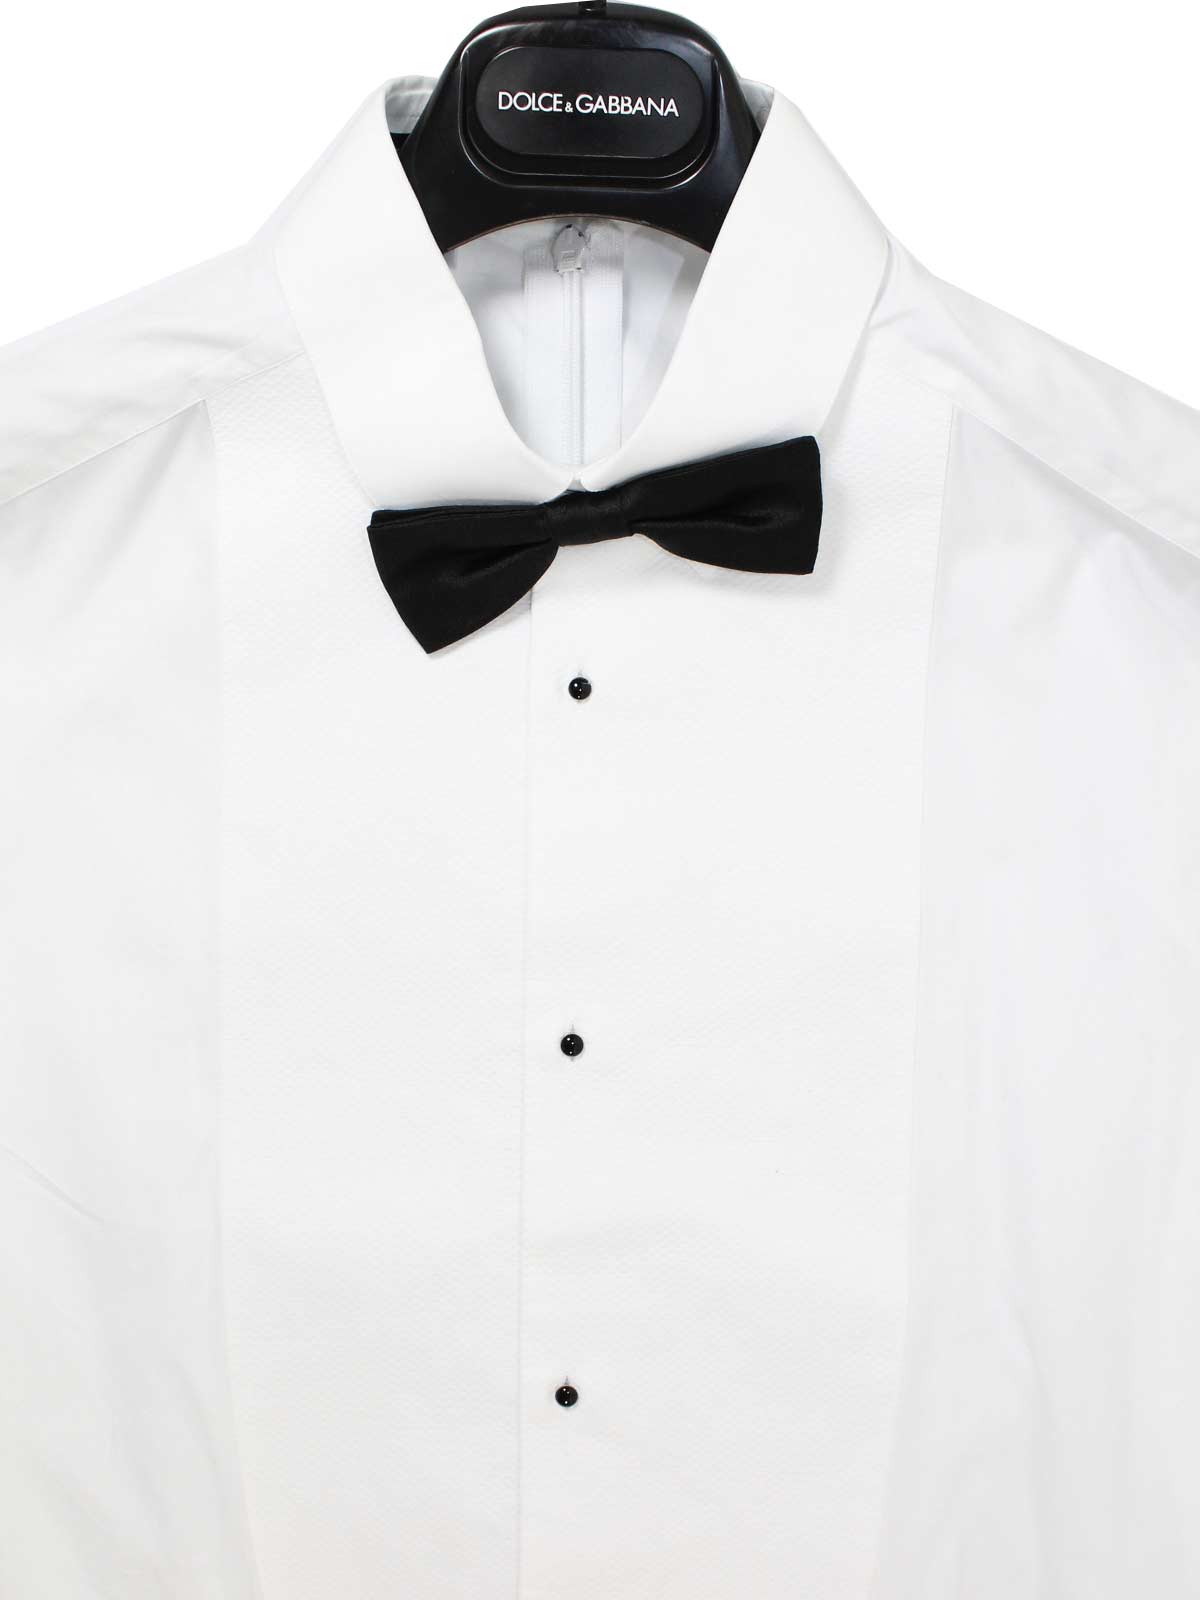 Dolce & Gabbana D&G Neckties Designer Tie for Men 534